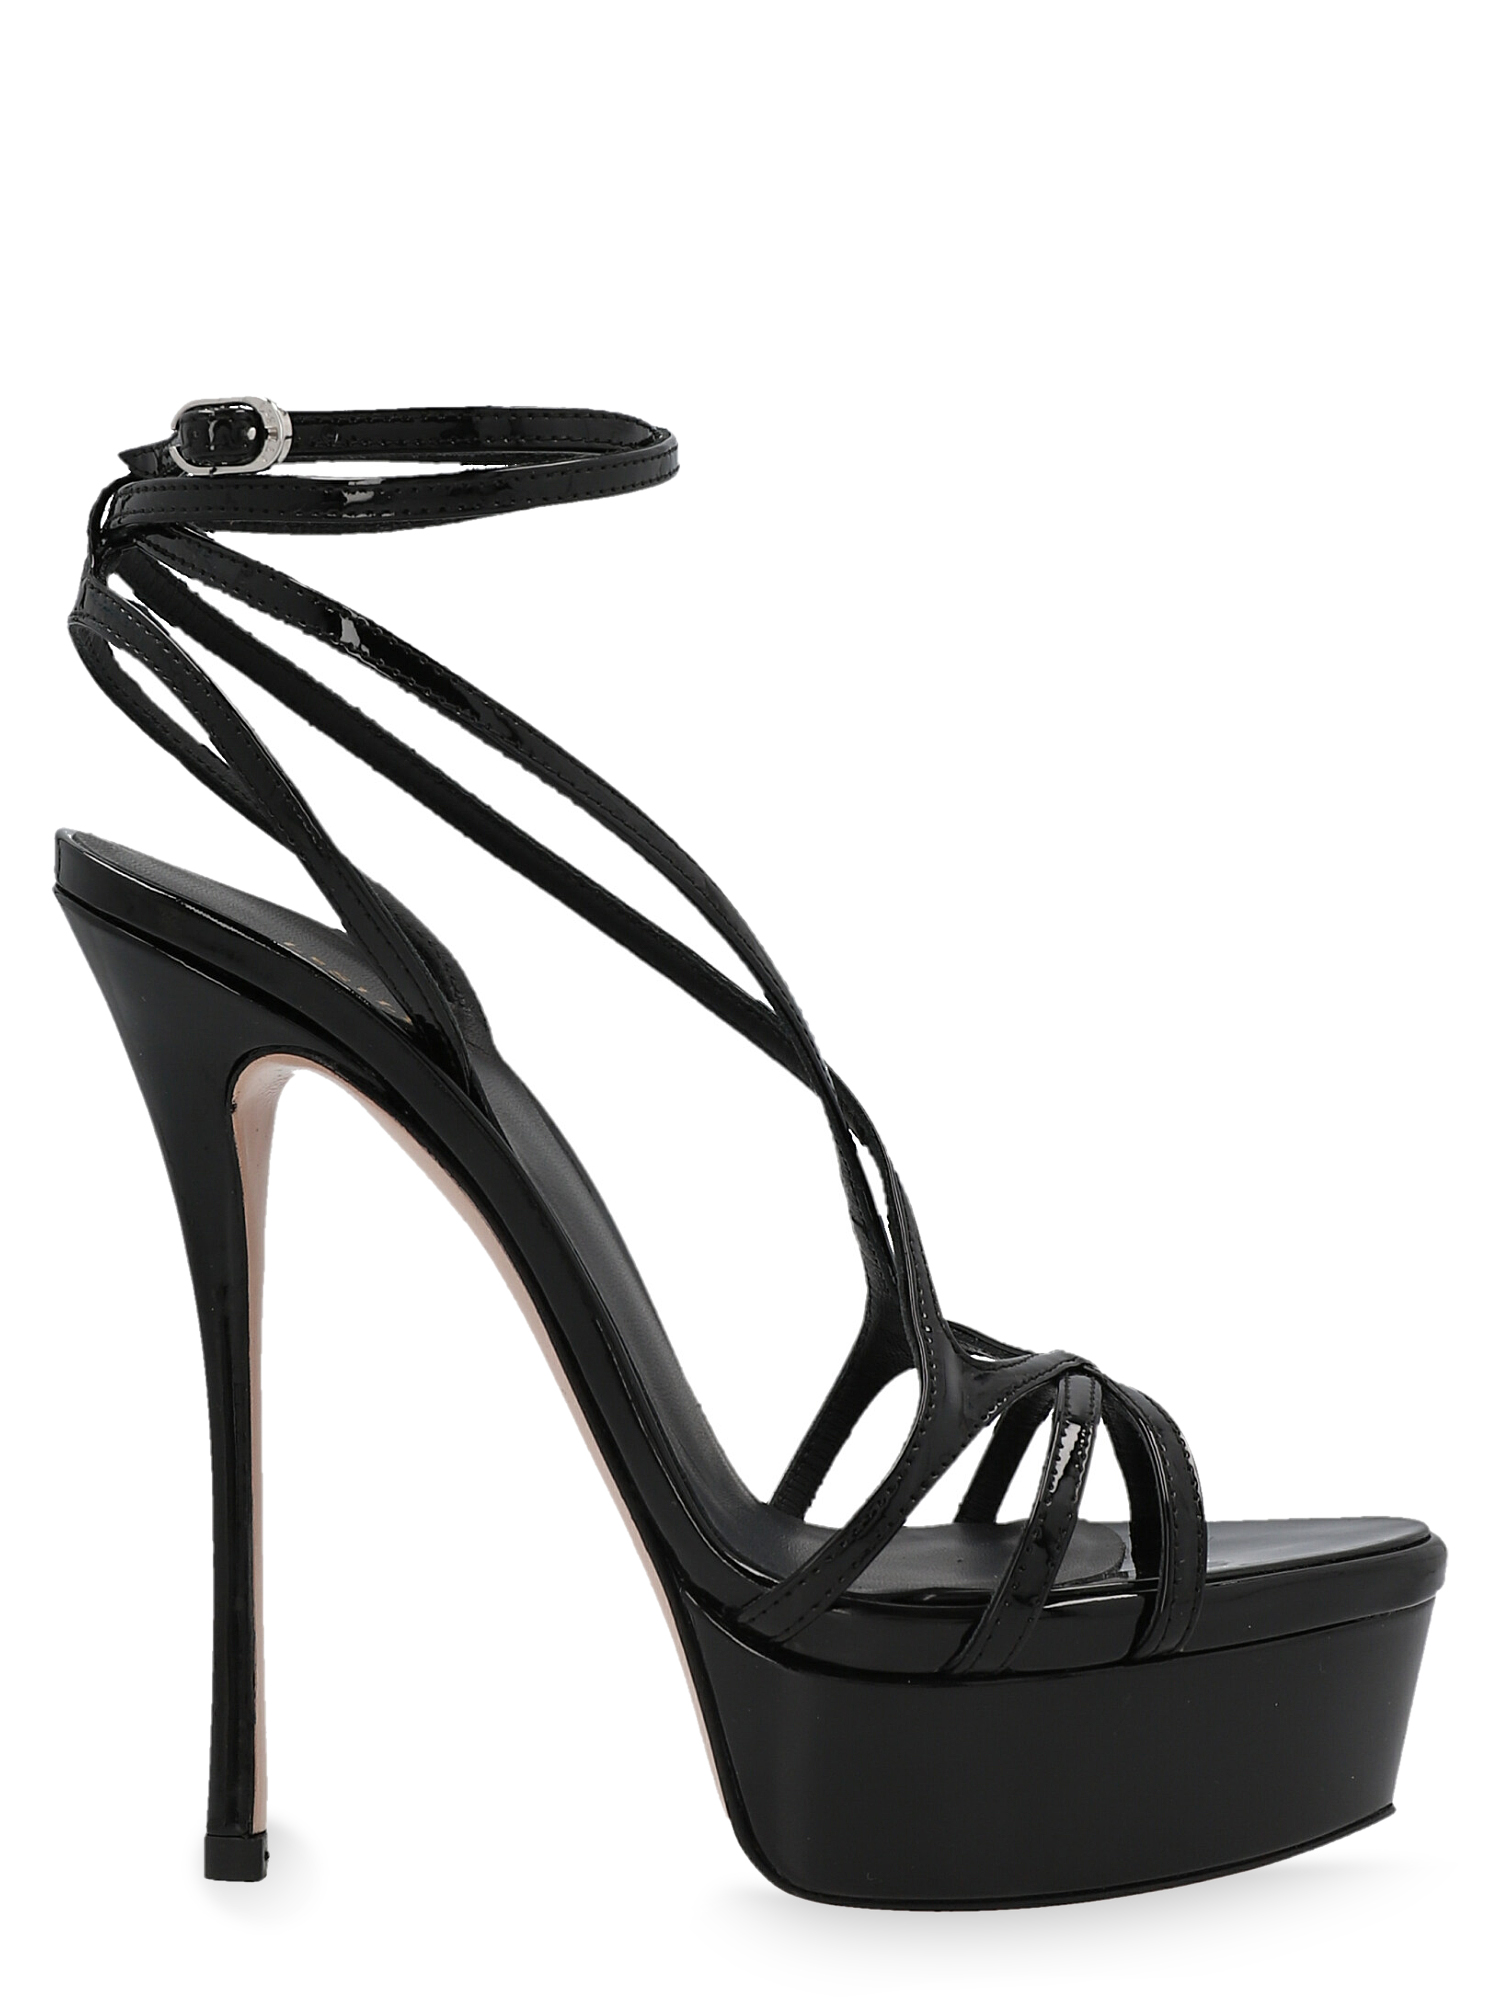 Sandales Pour Femme - Le Silla - En Leather Black - Taille: IT 35.5 - EU 35.5